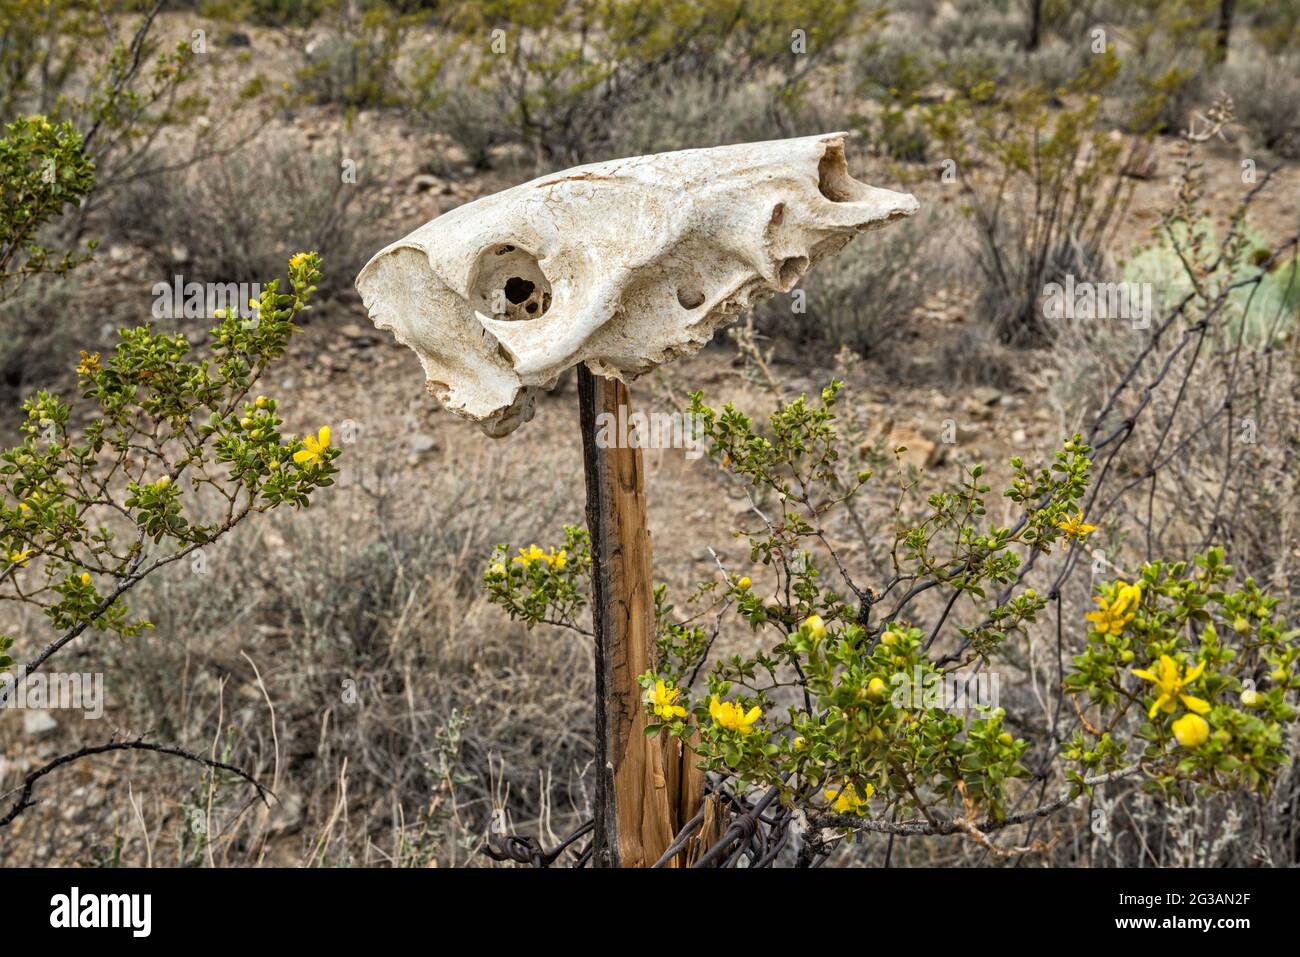 Cráneo animal, arbusto de creosota en flor, en el campamento de McGuirks Tanks, área de El Solitario, Parque Estatal Big Bend Ranch, Texas, Estados Unidos Foto de stock